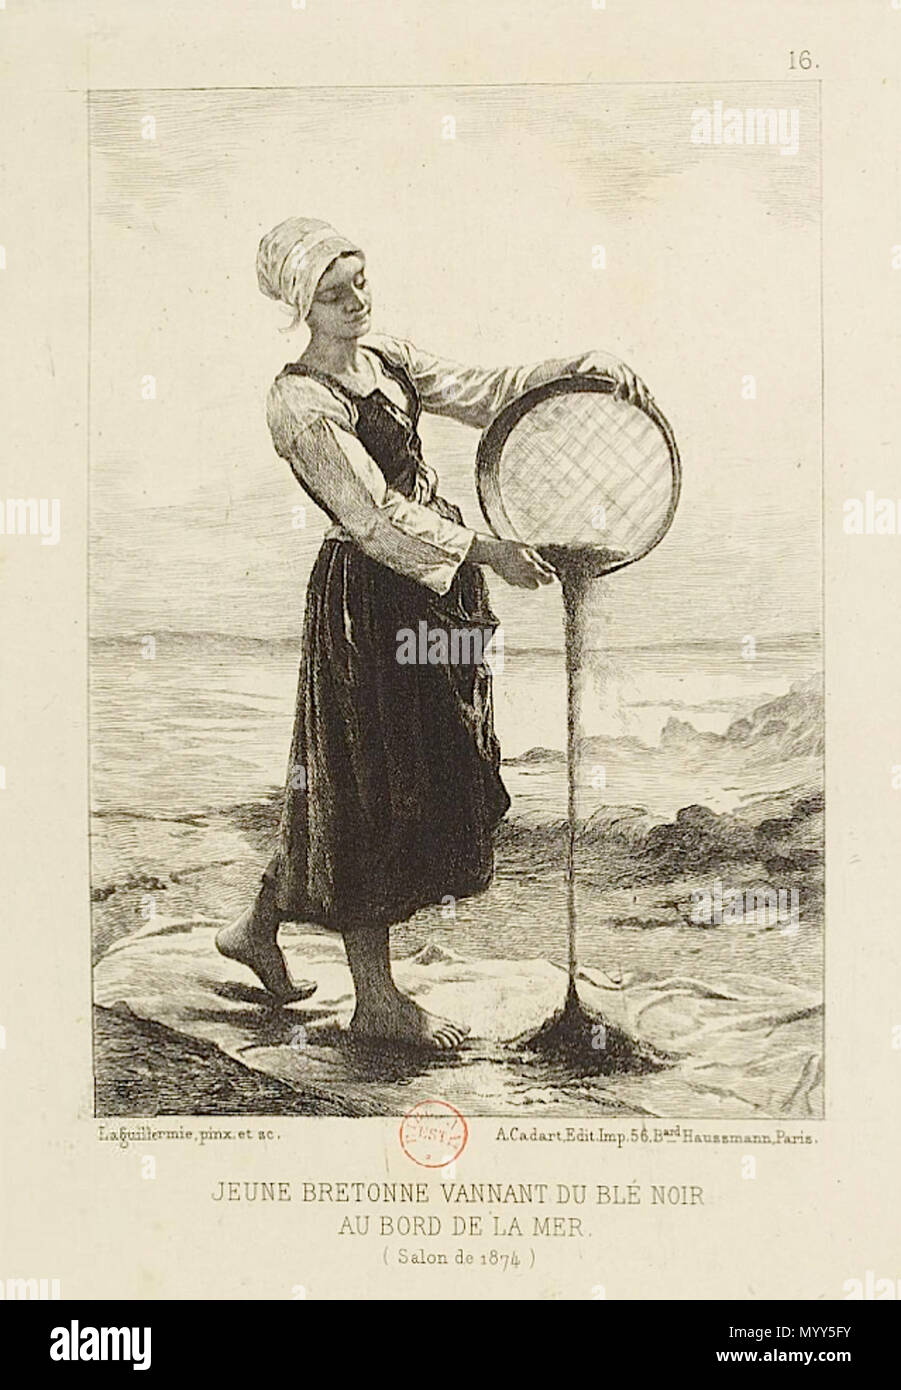 . English: Jeune bretonne vannant du blé noir au bord de la mer. Salon de 1874, etching published in L' Eau-forte en 1875, Paris, Cadart. 62 Laguillermie Jeune bretonne Stock Photo